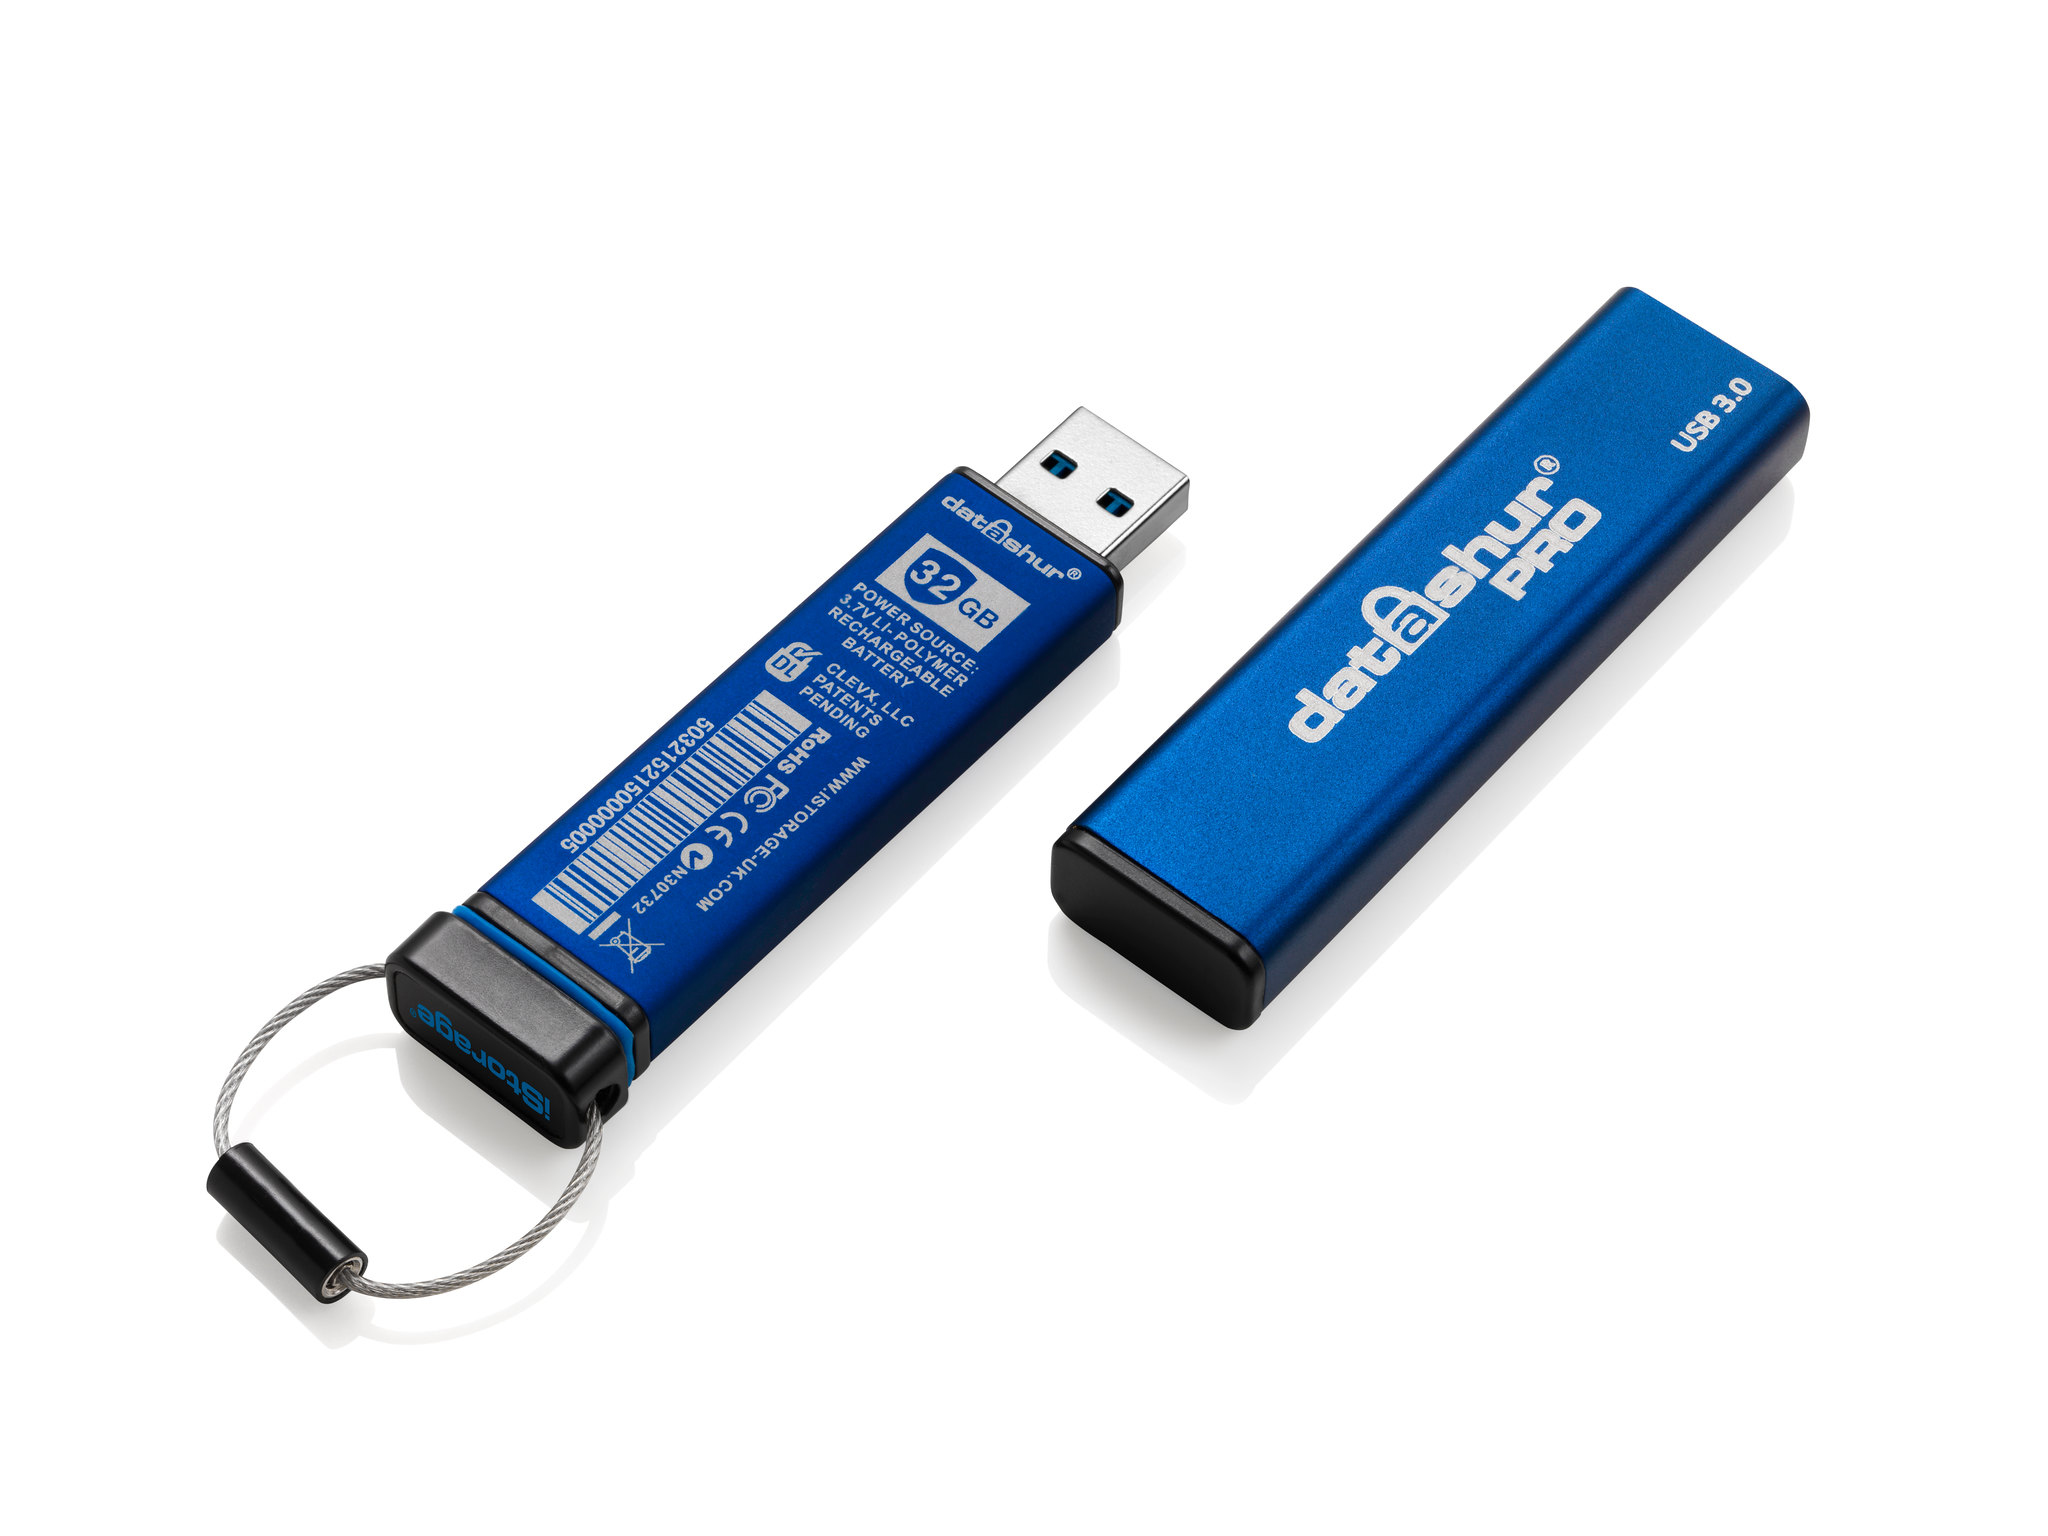 Clé USB 3.0 sécurisée par cryptage AES 256/Fips 197 - 64 Go iStorage  IS-FL-DA3-256-64 